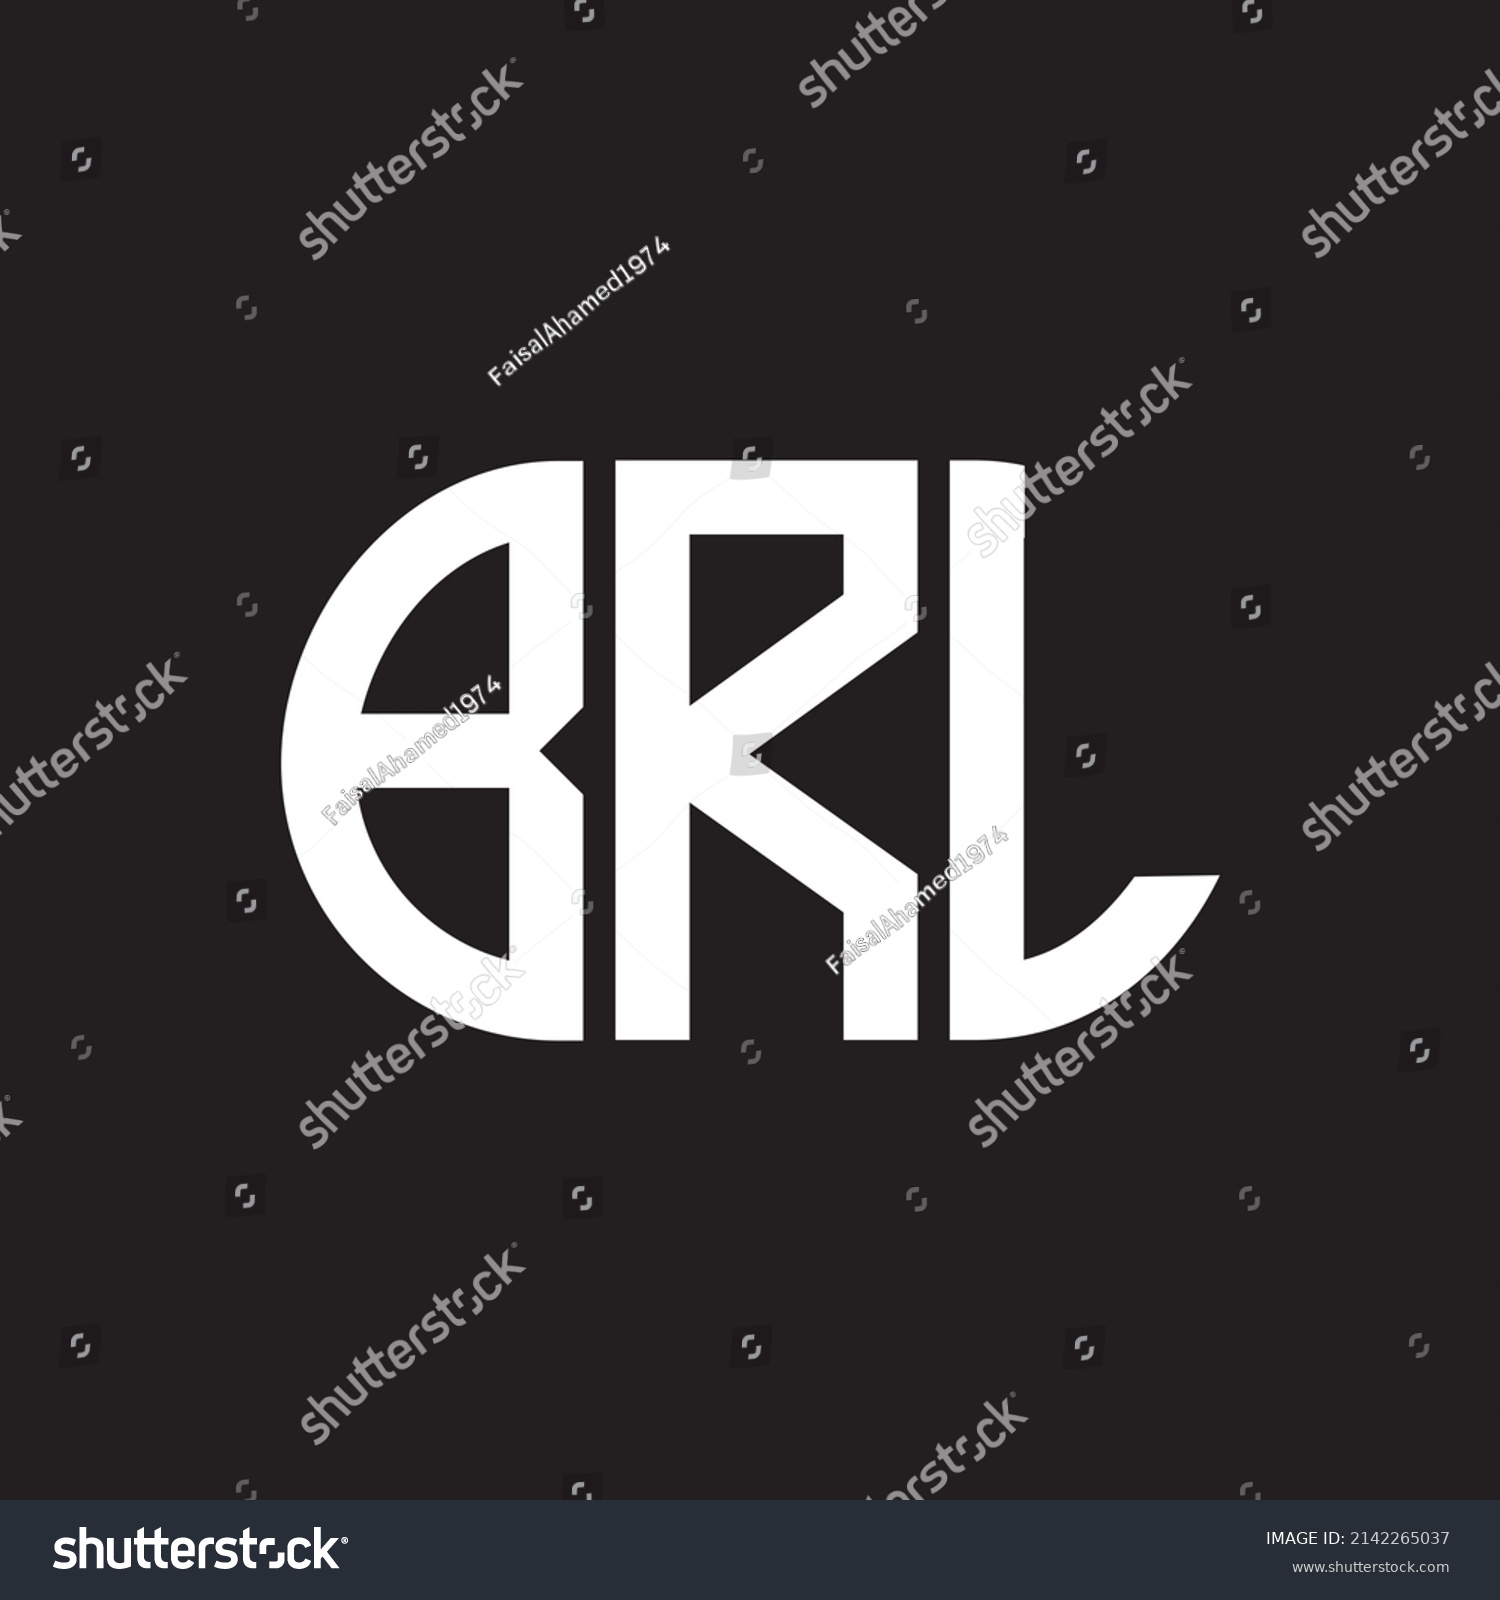 SVG of BRL letter logo design on black background. BRL 
creative initials letter logo concept. BRL letter design. svg